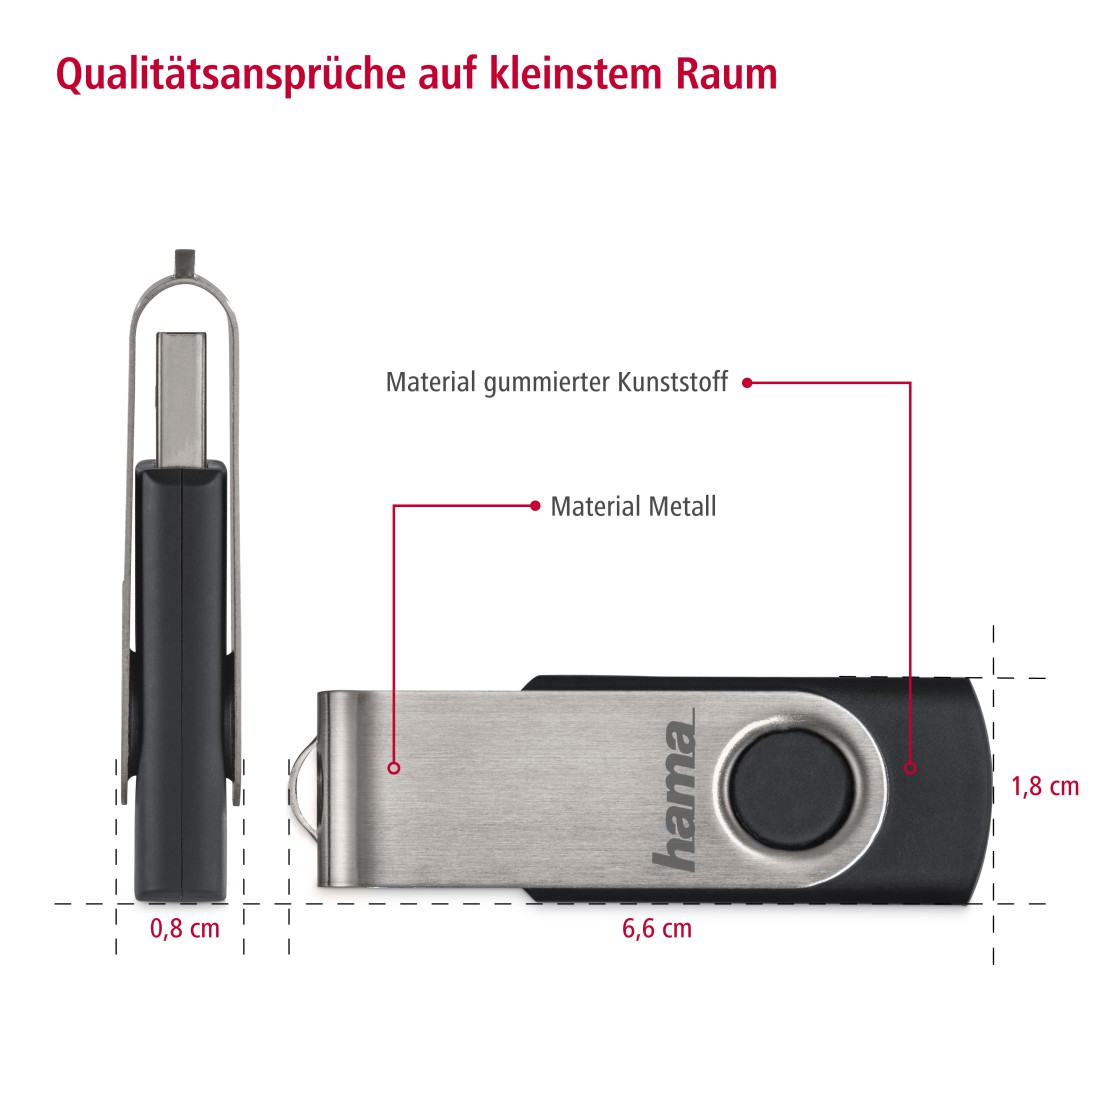 USB-Stick, MB/s, HAMA 16 10 Schwarz/Silber GB, Rotate